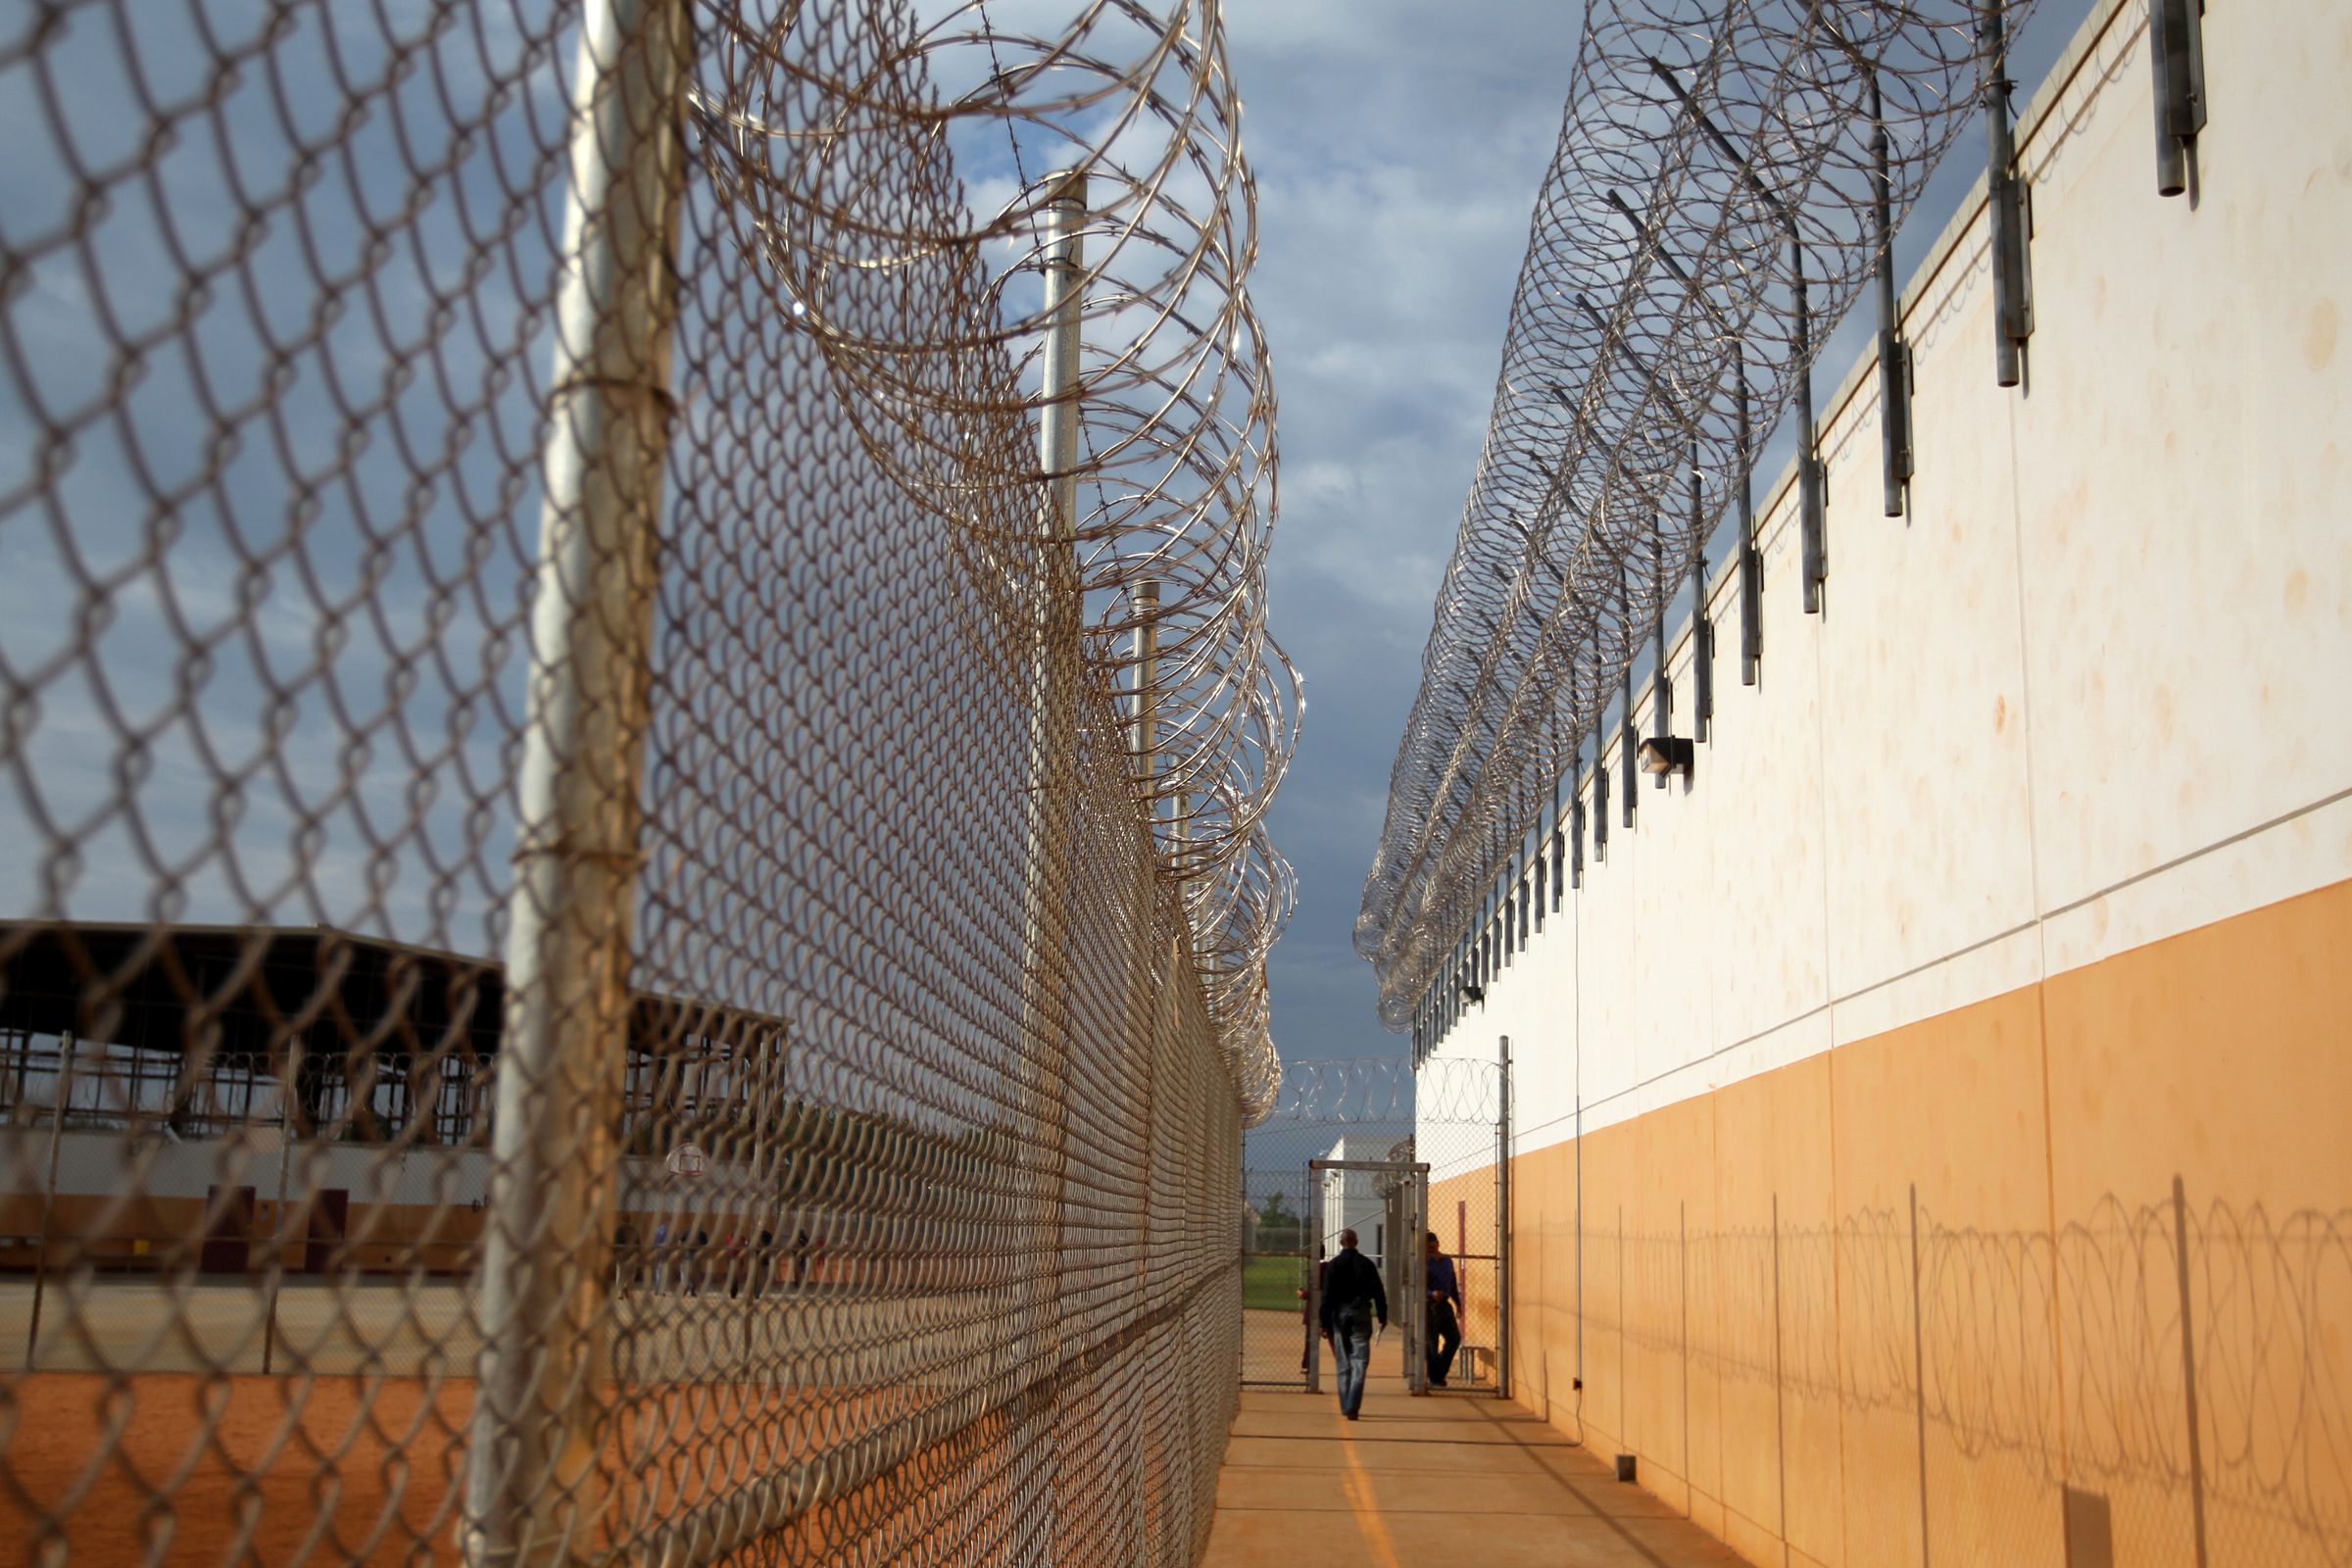 LUMPKIN, GA - MAY 4: The Stewart Detention Center in Lumpkin, Ga.